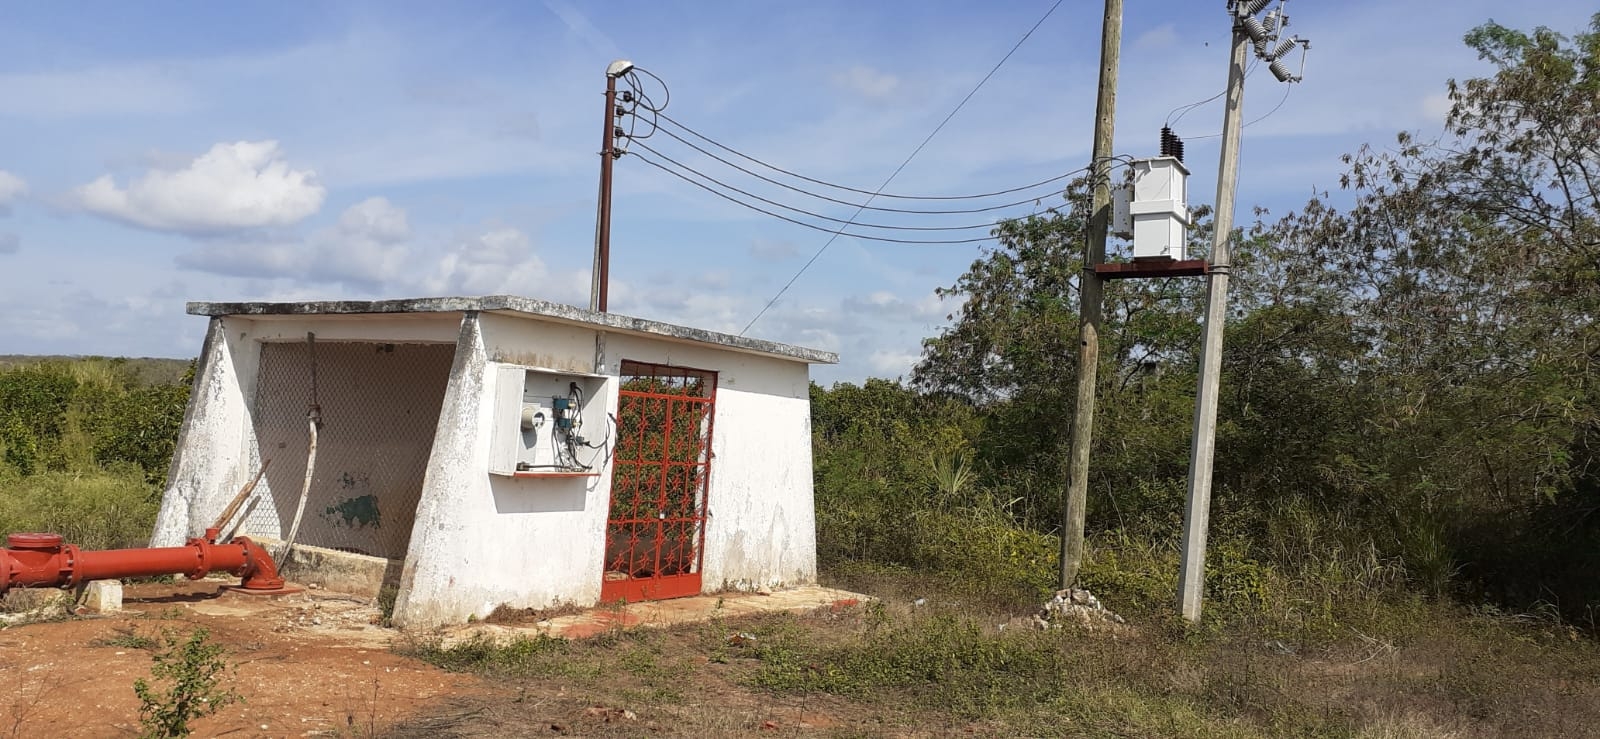 Empresarios del sector agropecuario apuestan por energía solar en José María Morelos